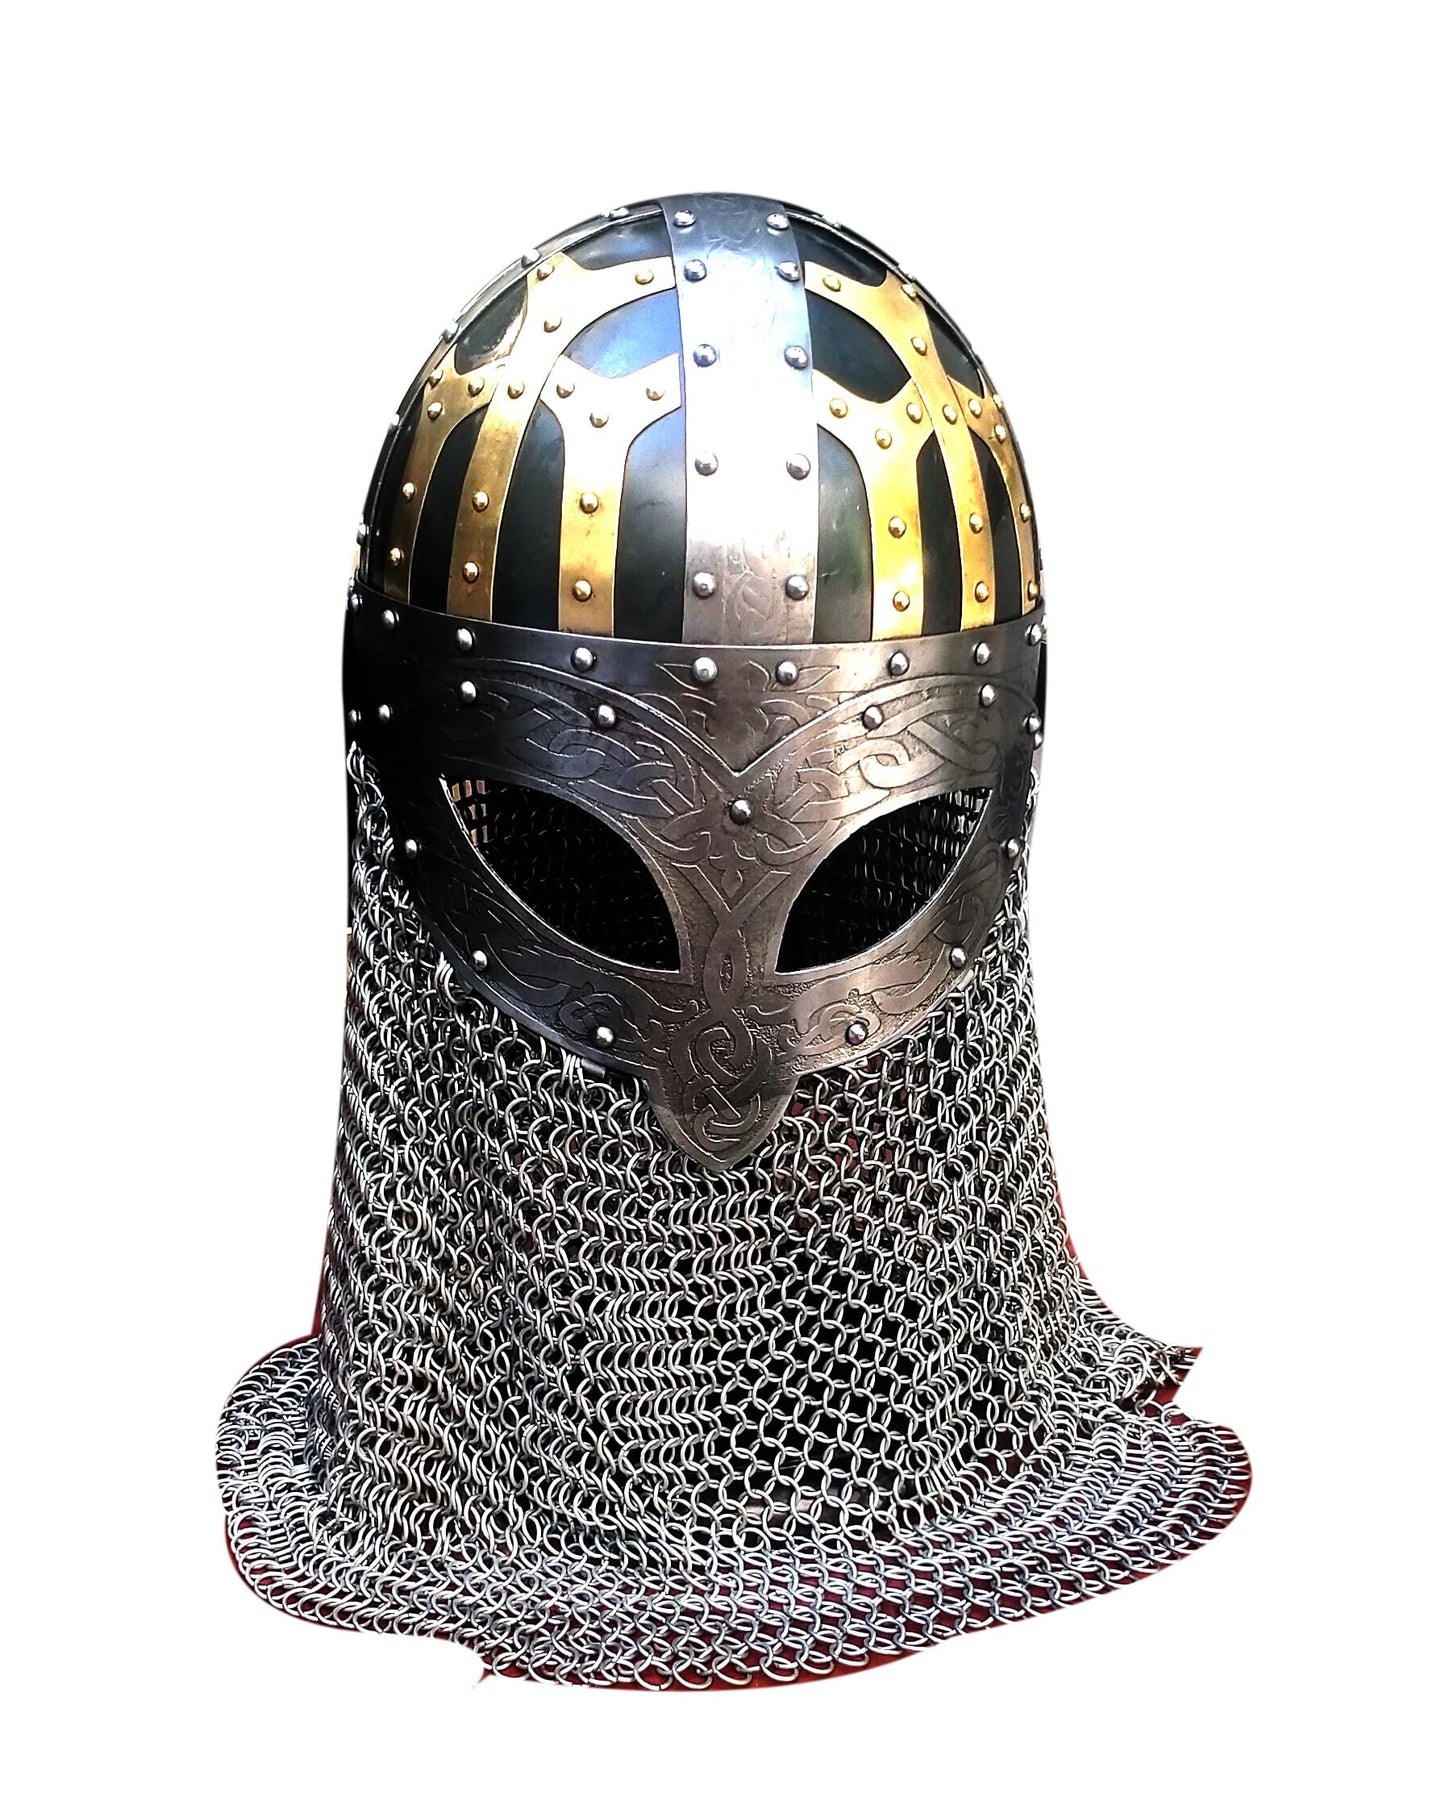 Viking Helmet Solid Steel and Brass Helmet